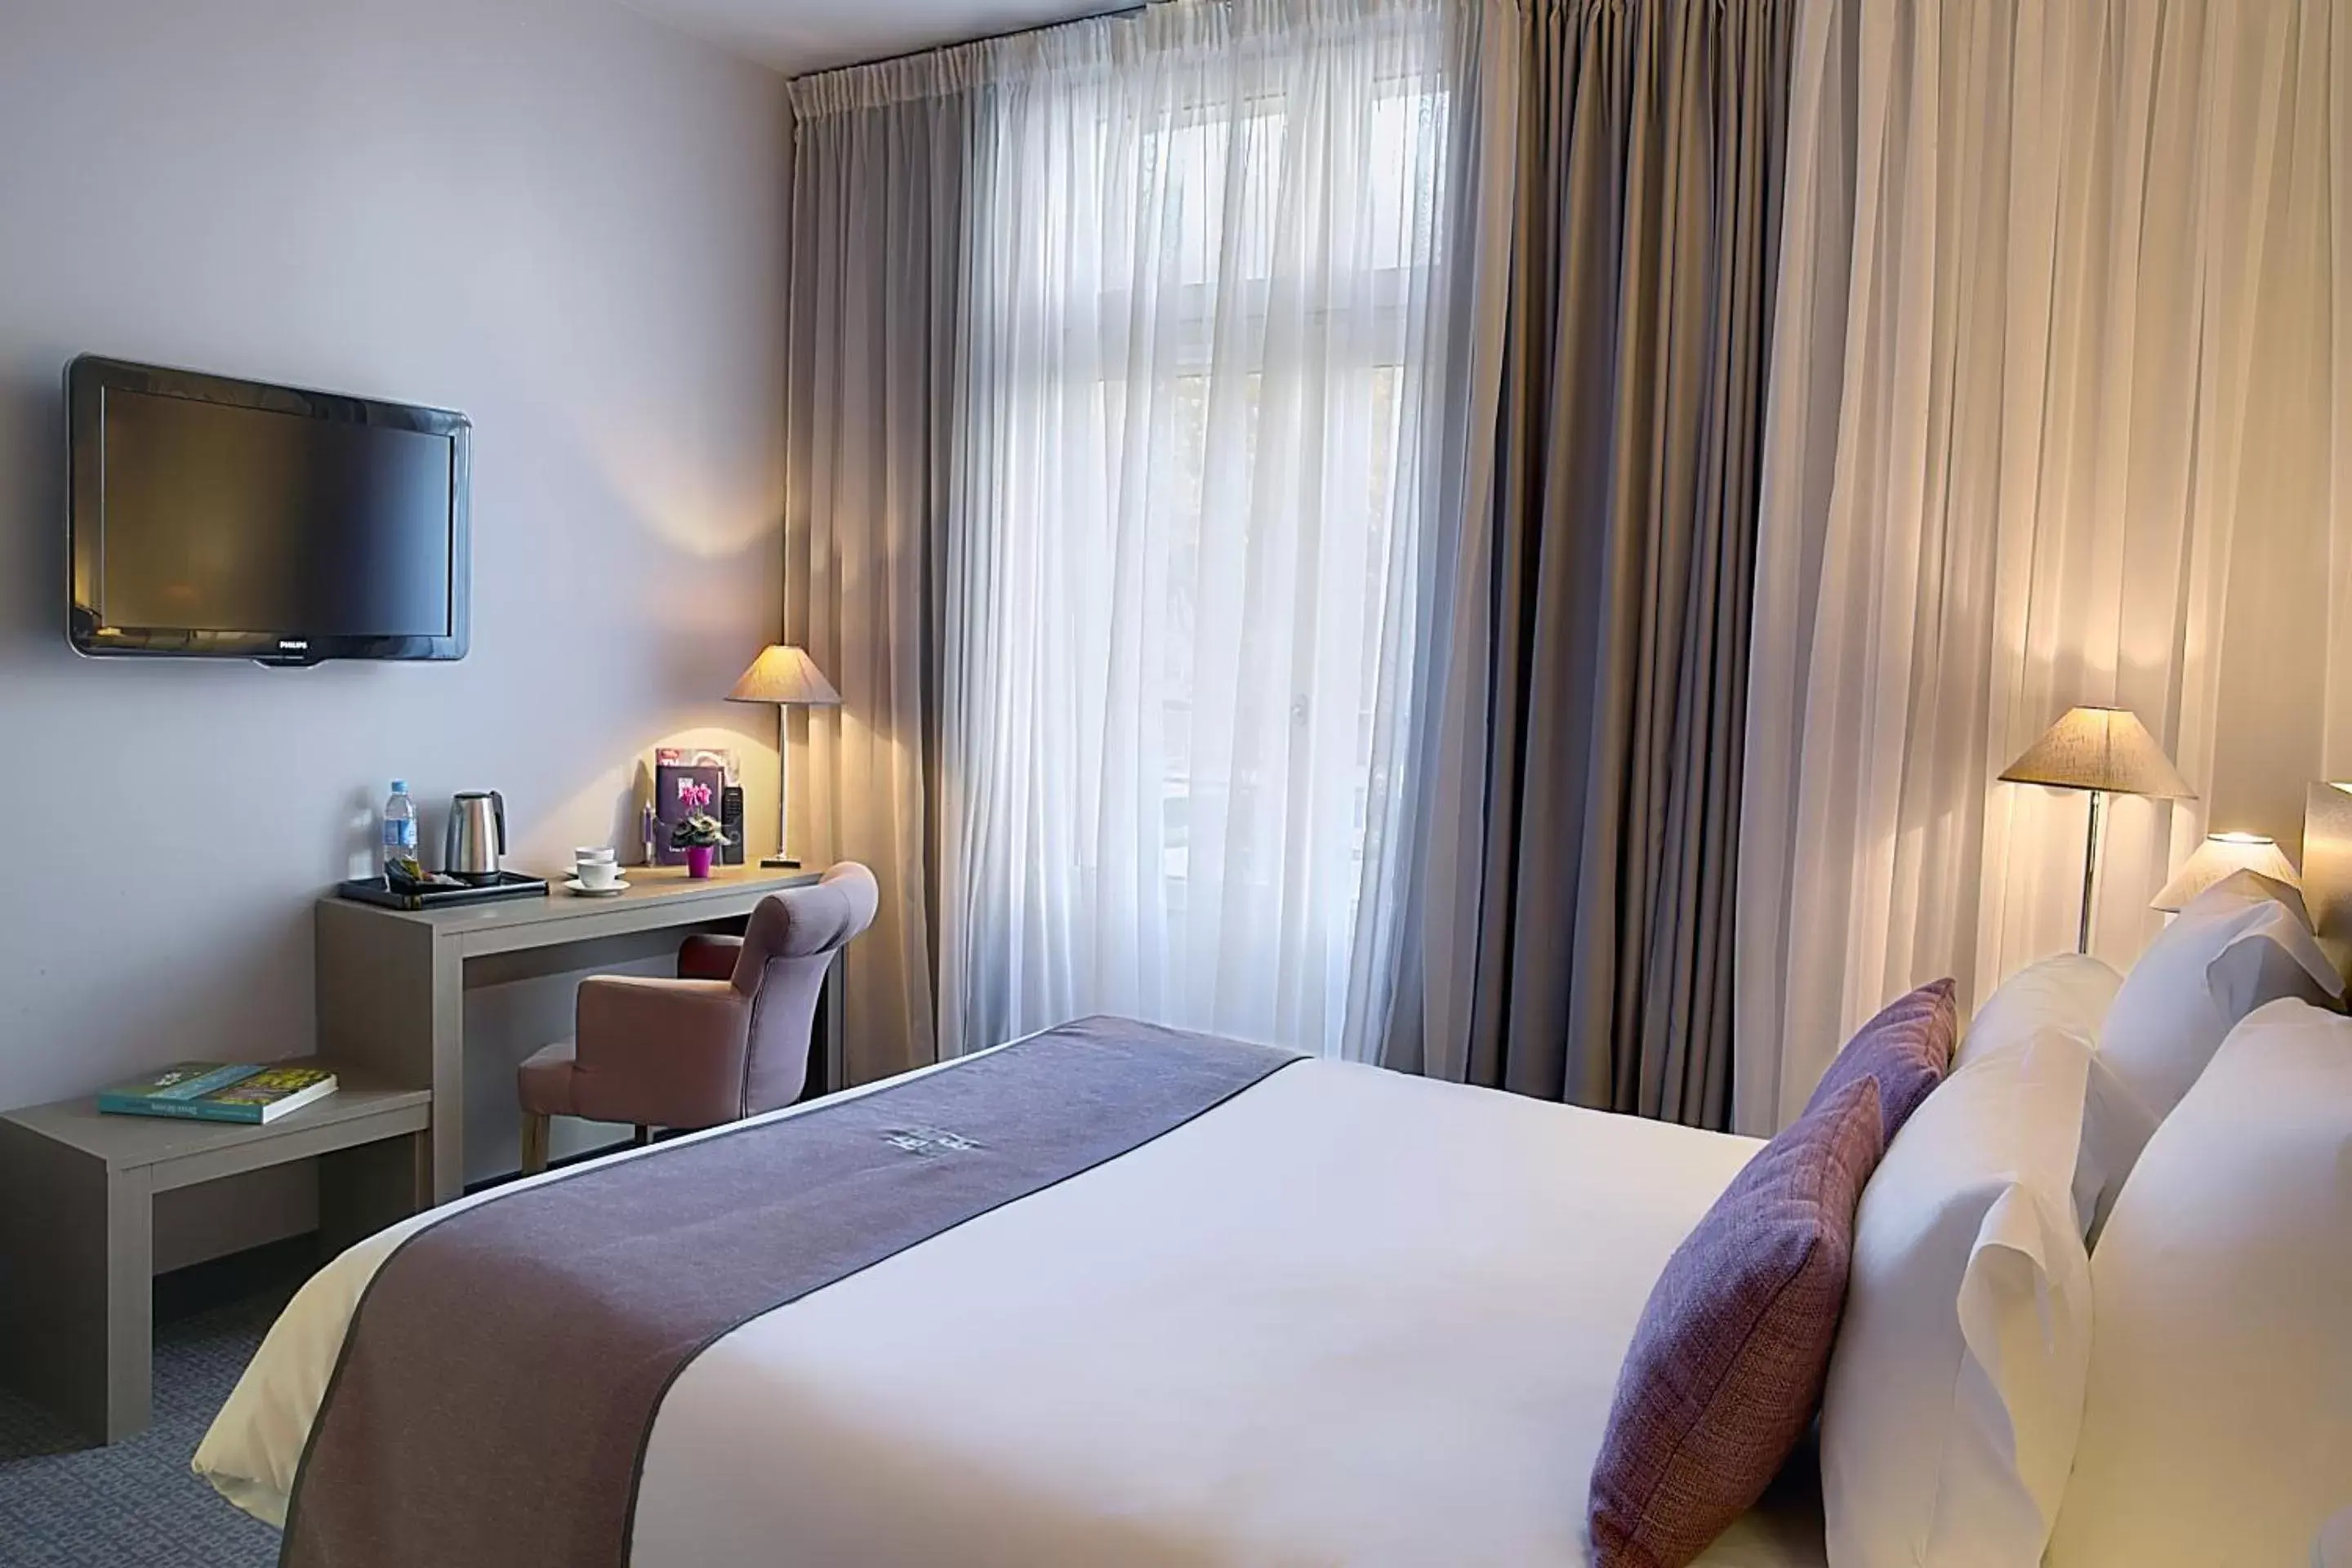 Bedroom, Room Photo in Best Western Hotel de la Breche